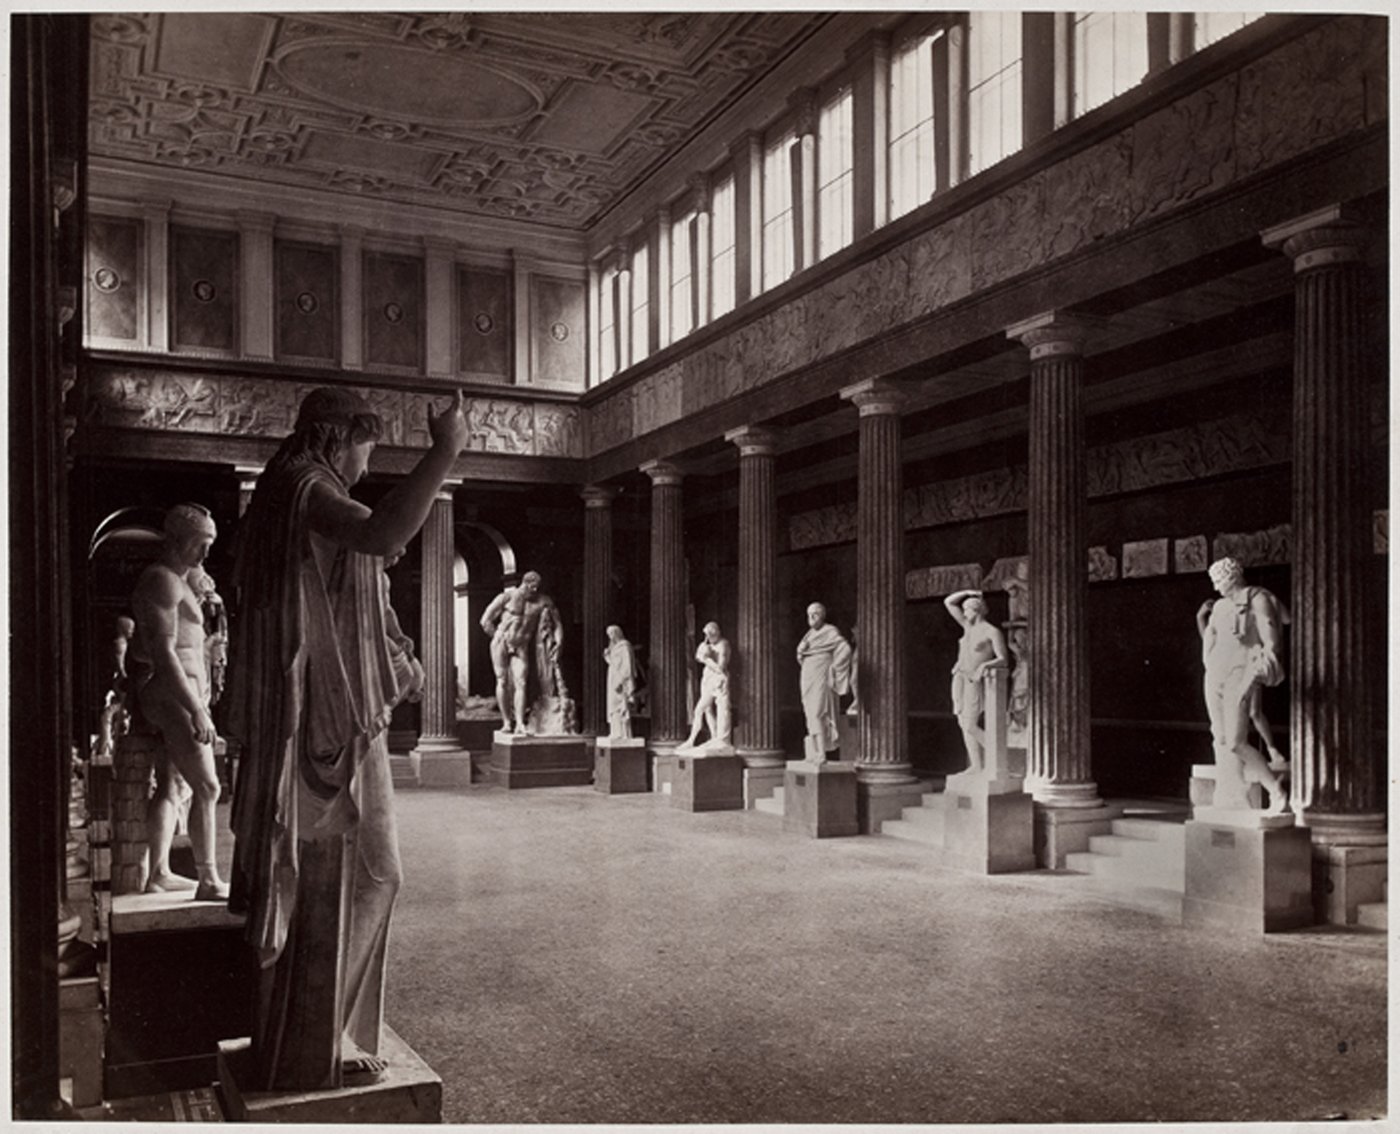 Die Fotografie zeigt einen Einblick in die Aula des Akademiegebäudes, in der Abgüsse von antiken Skulpturen aufgestellt sind.